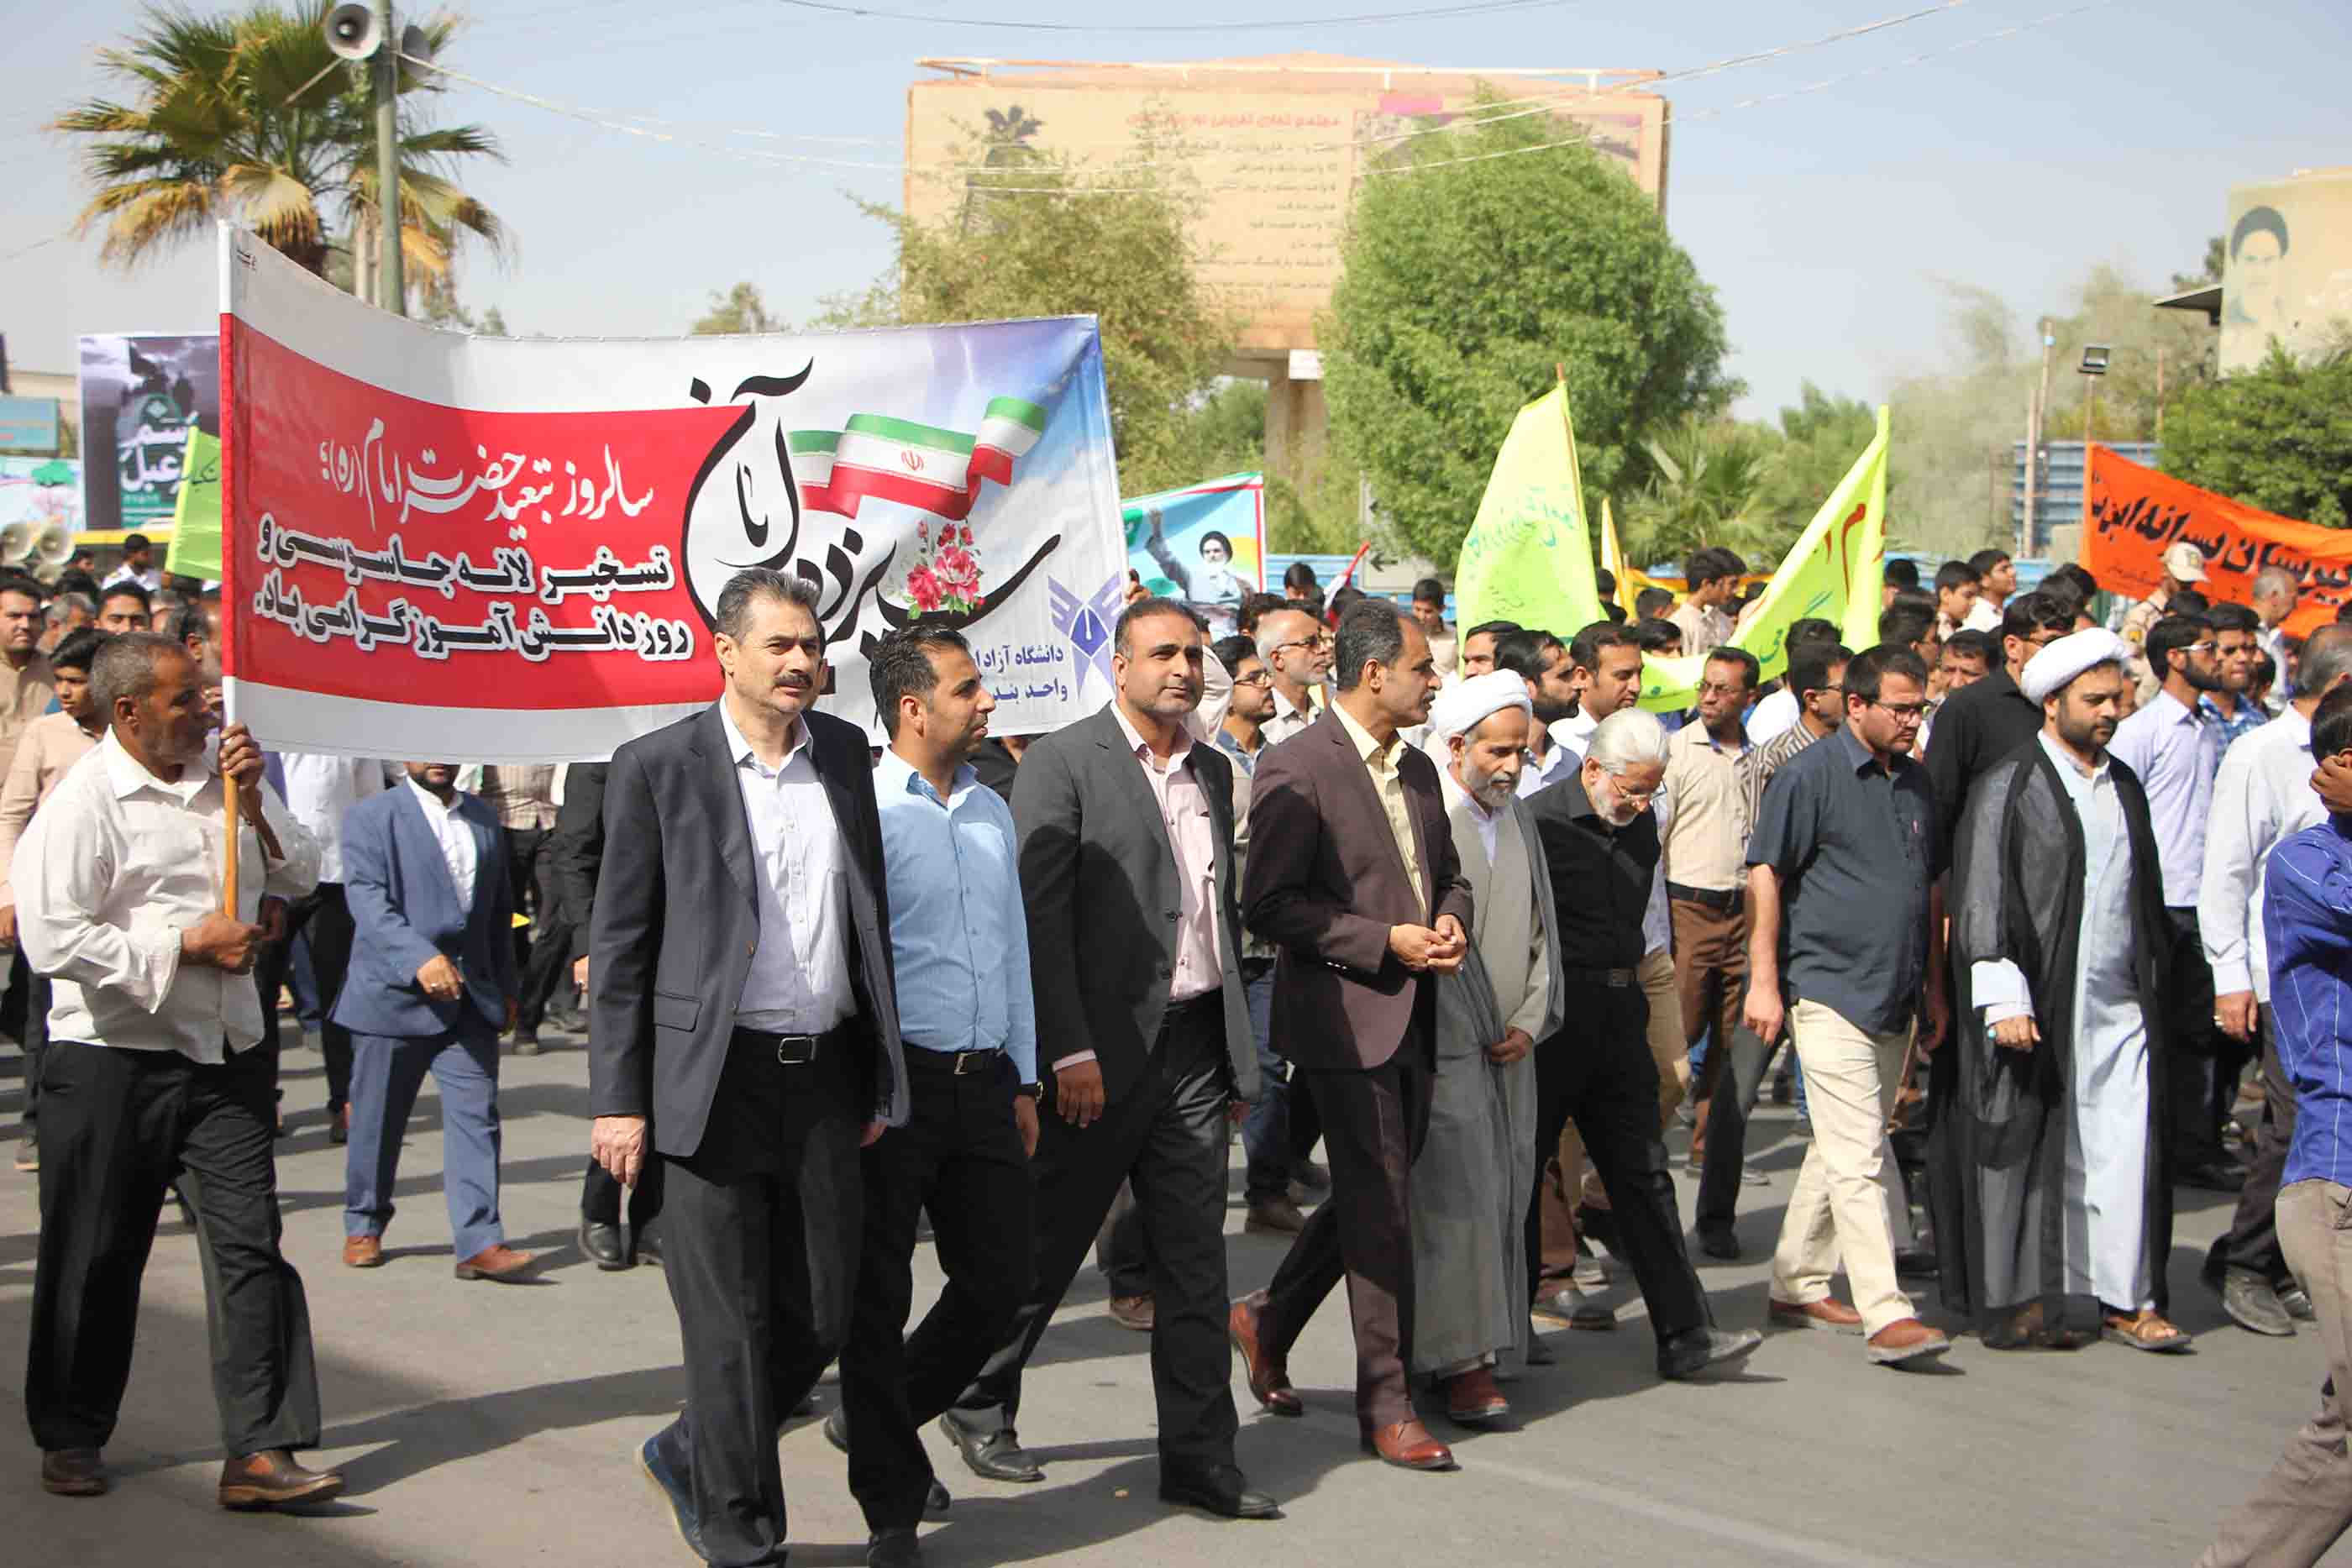 //حضور گسترده استادان، کارکنان و دانشجویان//// دانشگاهیان بندرعباس در راهپیمایی یوم الله ۱۳ آبان حضور گسترده ای داشتند